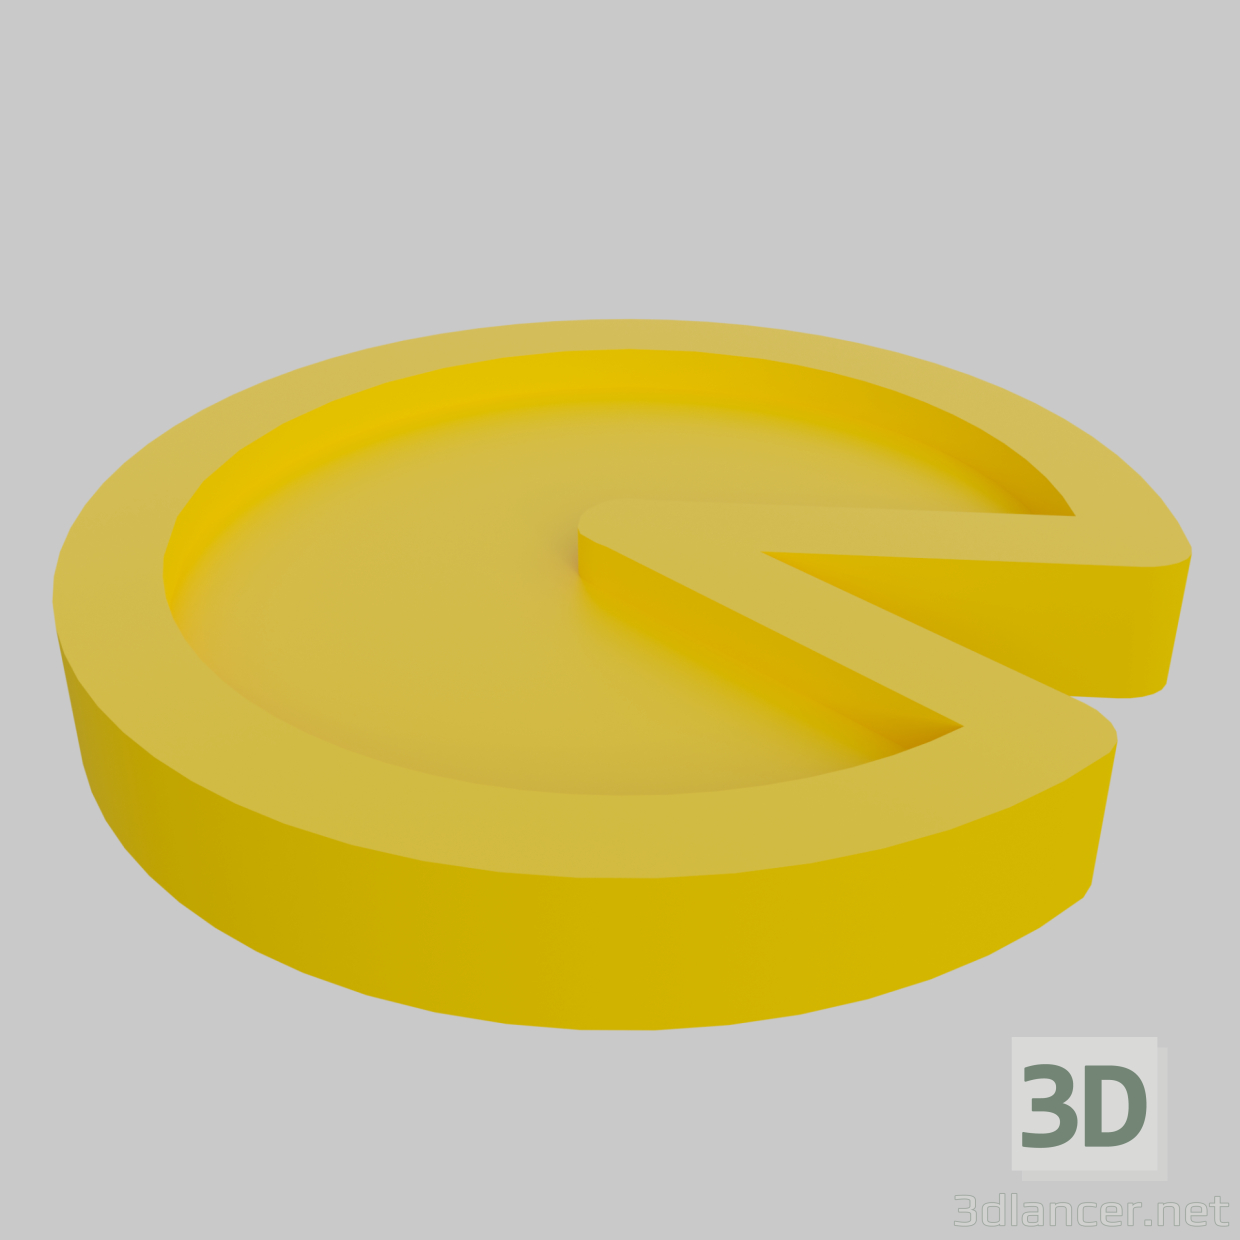 Pacman 3D-Modell kaufen - Rendern